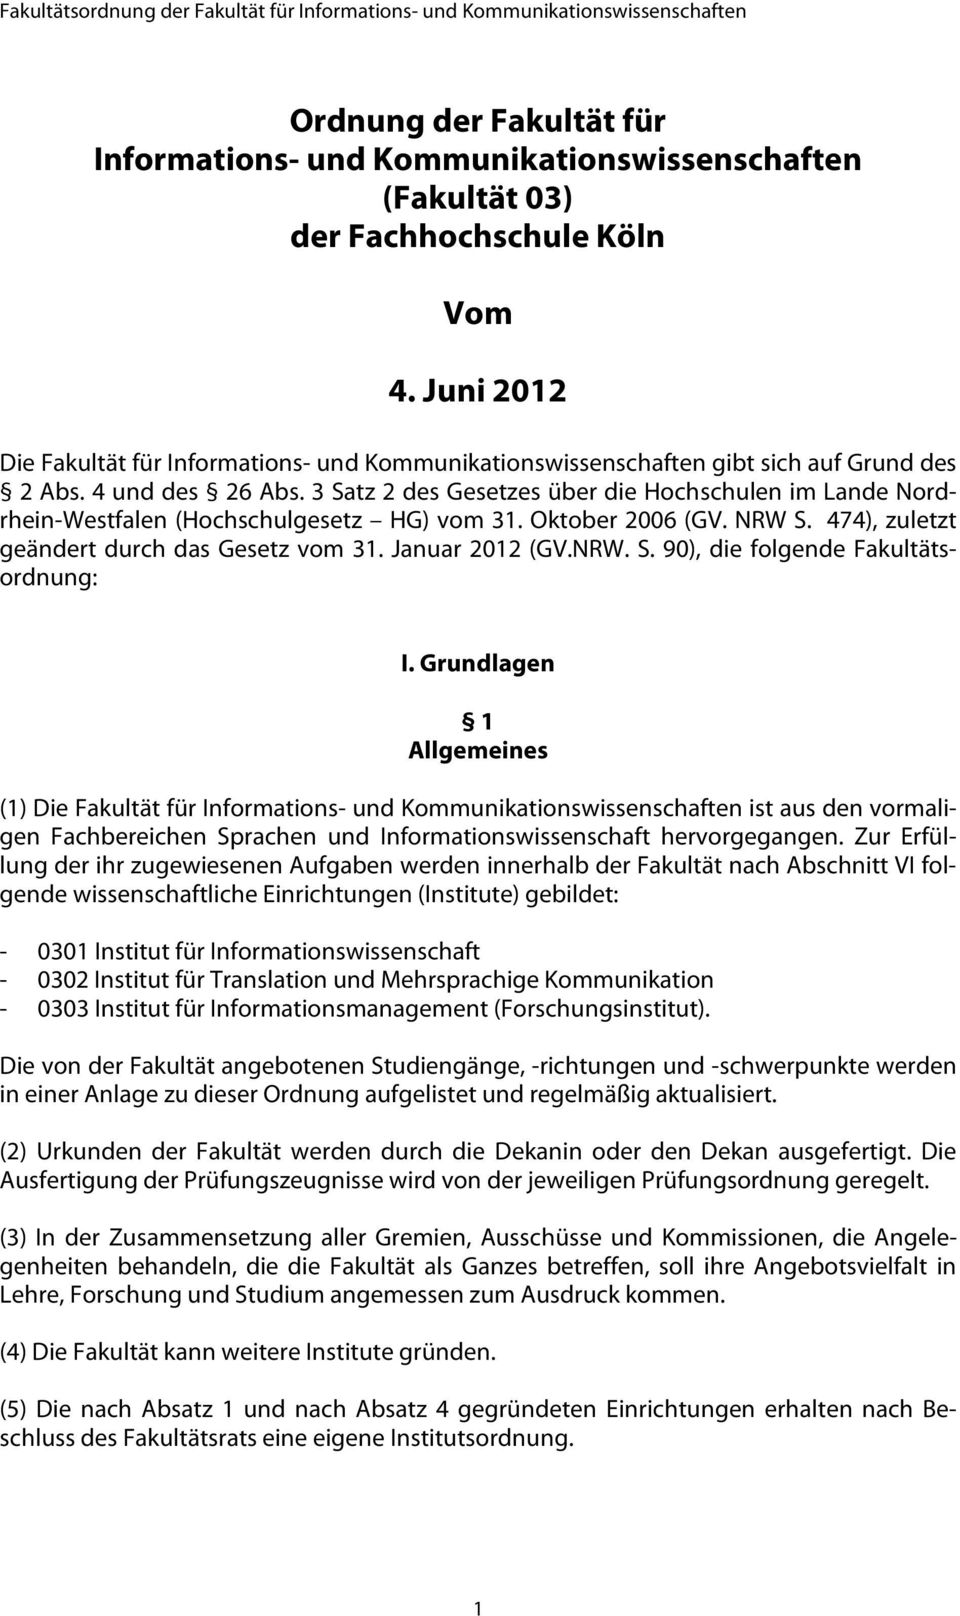 3 Satz 2 des Gesetzes über die Hochschulen im Lande Nordrhein-Westfalen (Hochschulgesetz HG) vom 31. Oktober 2006 (GV. NRW S. 474), zuletzt geändert durch das Gesetz vom 31. Januar 2012 (GV.NRW. S. 90), die folgende Fakultätsordnung: I.